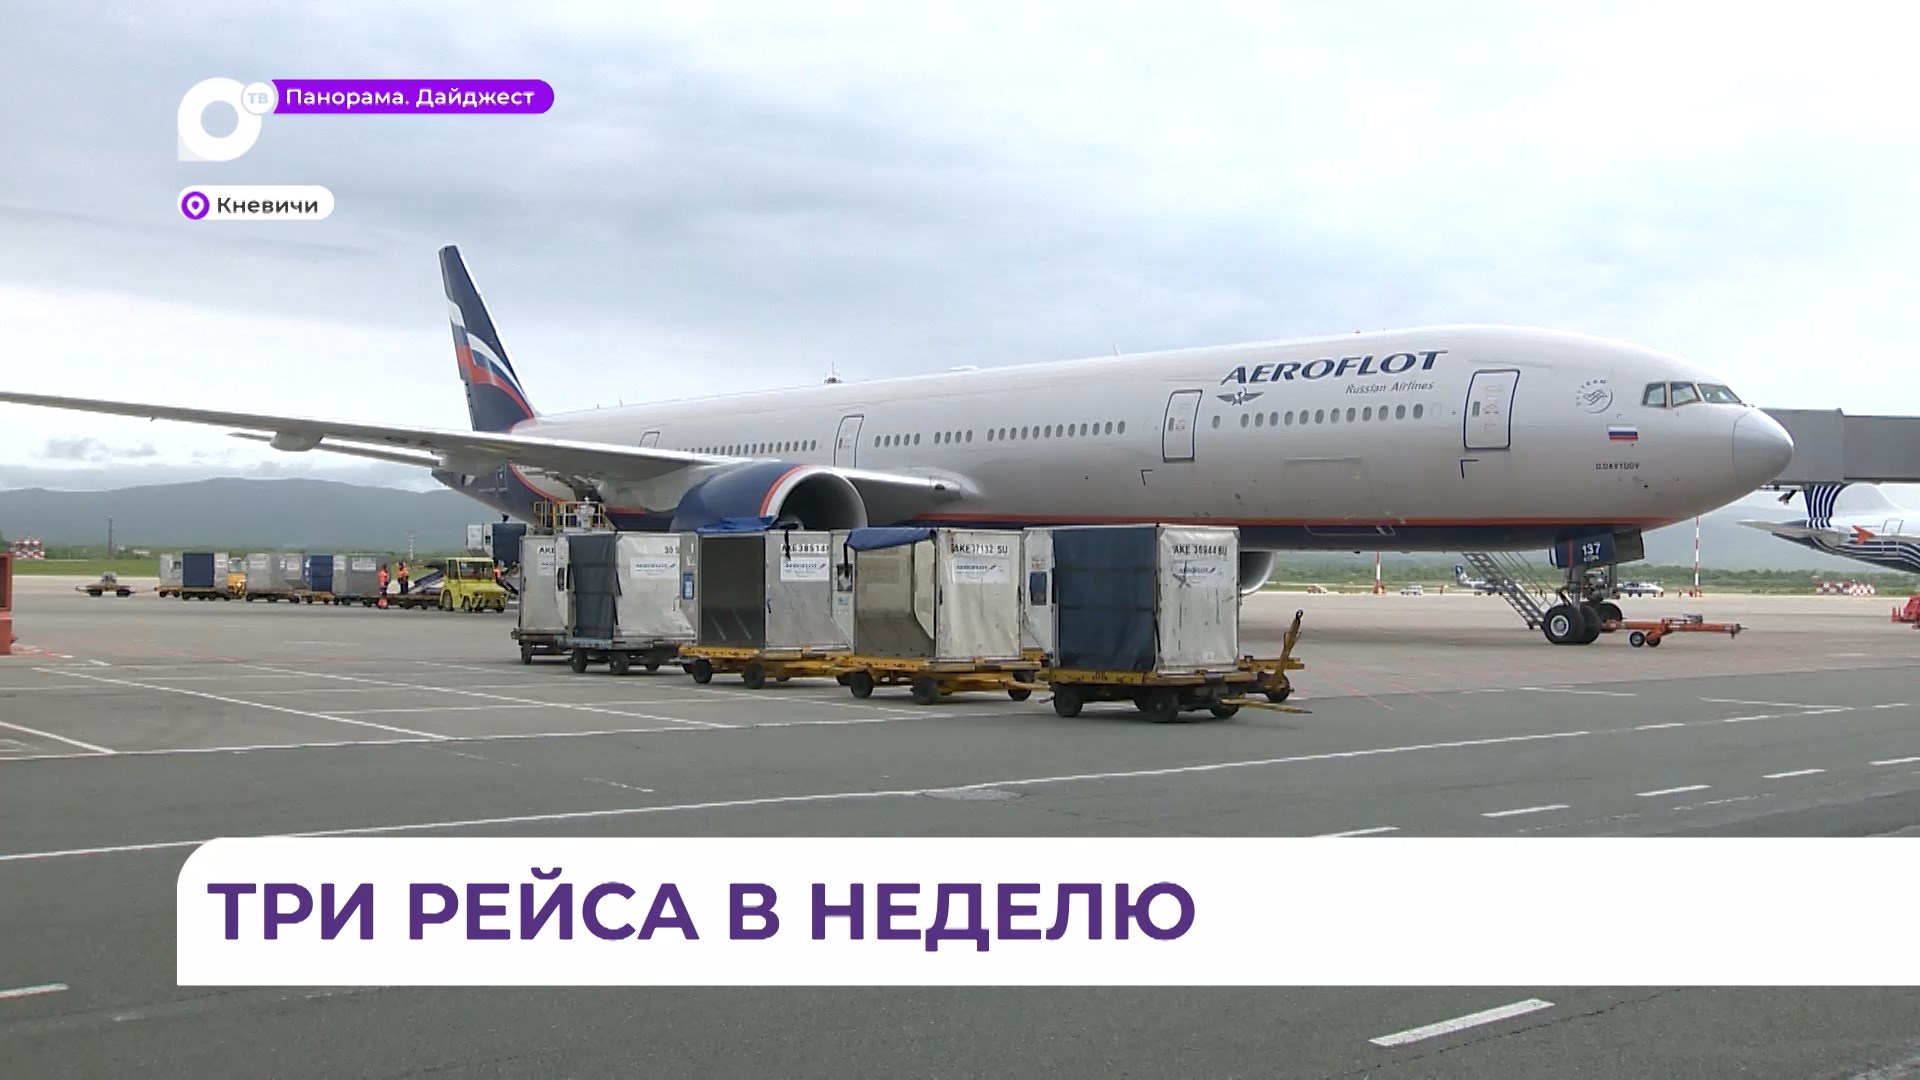 Стартовали продажи билетов «Аэрофлота» на прямые рейсы Санкт-Петербург - Владивосток